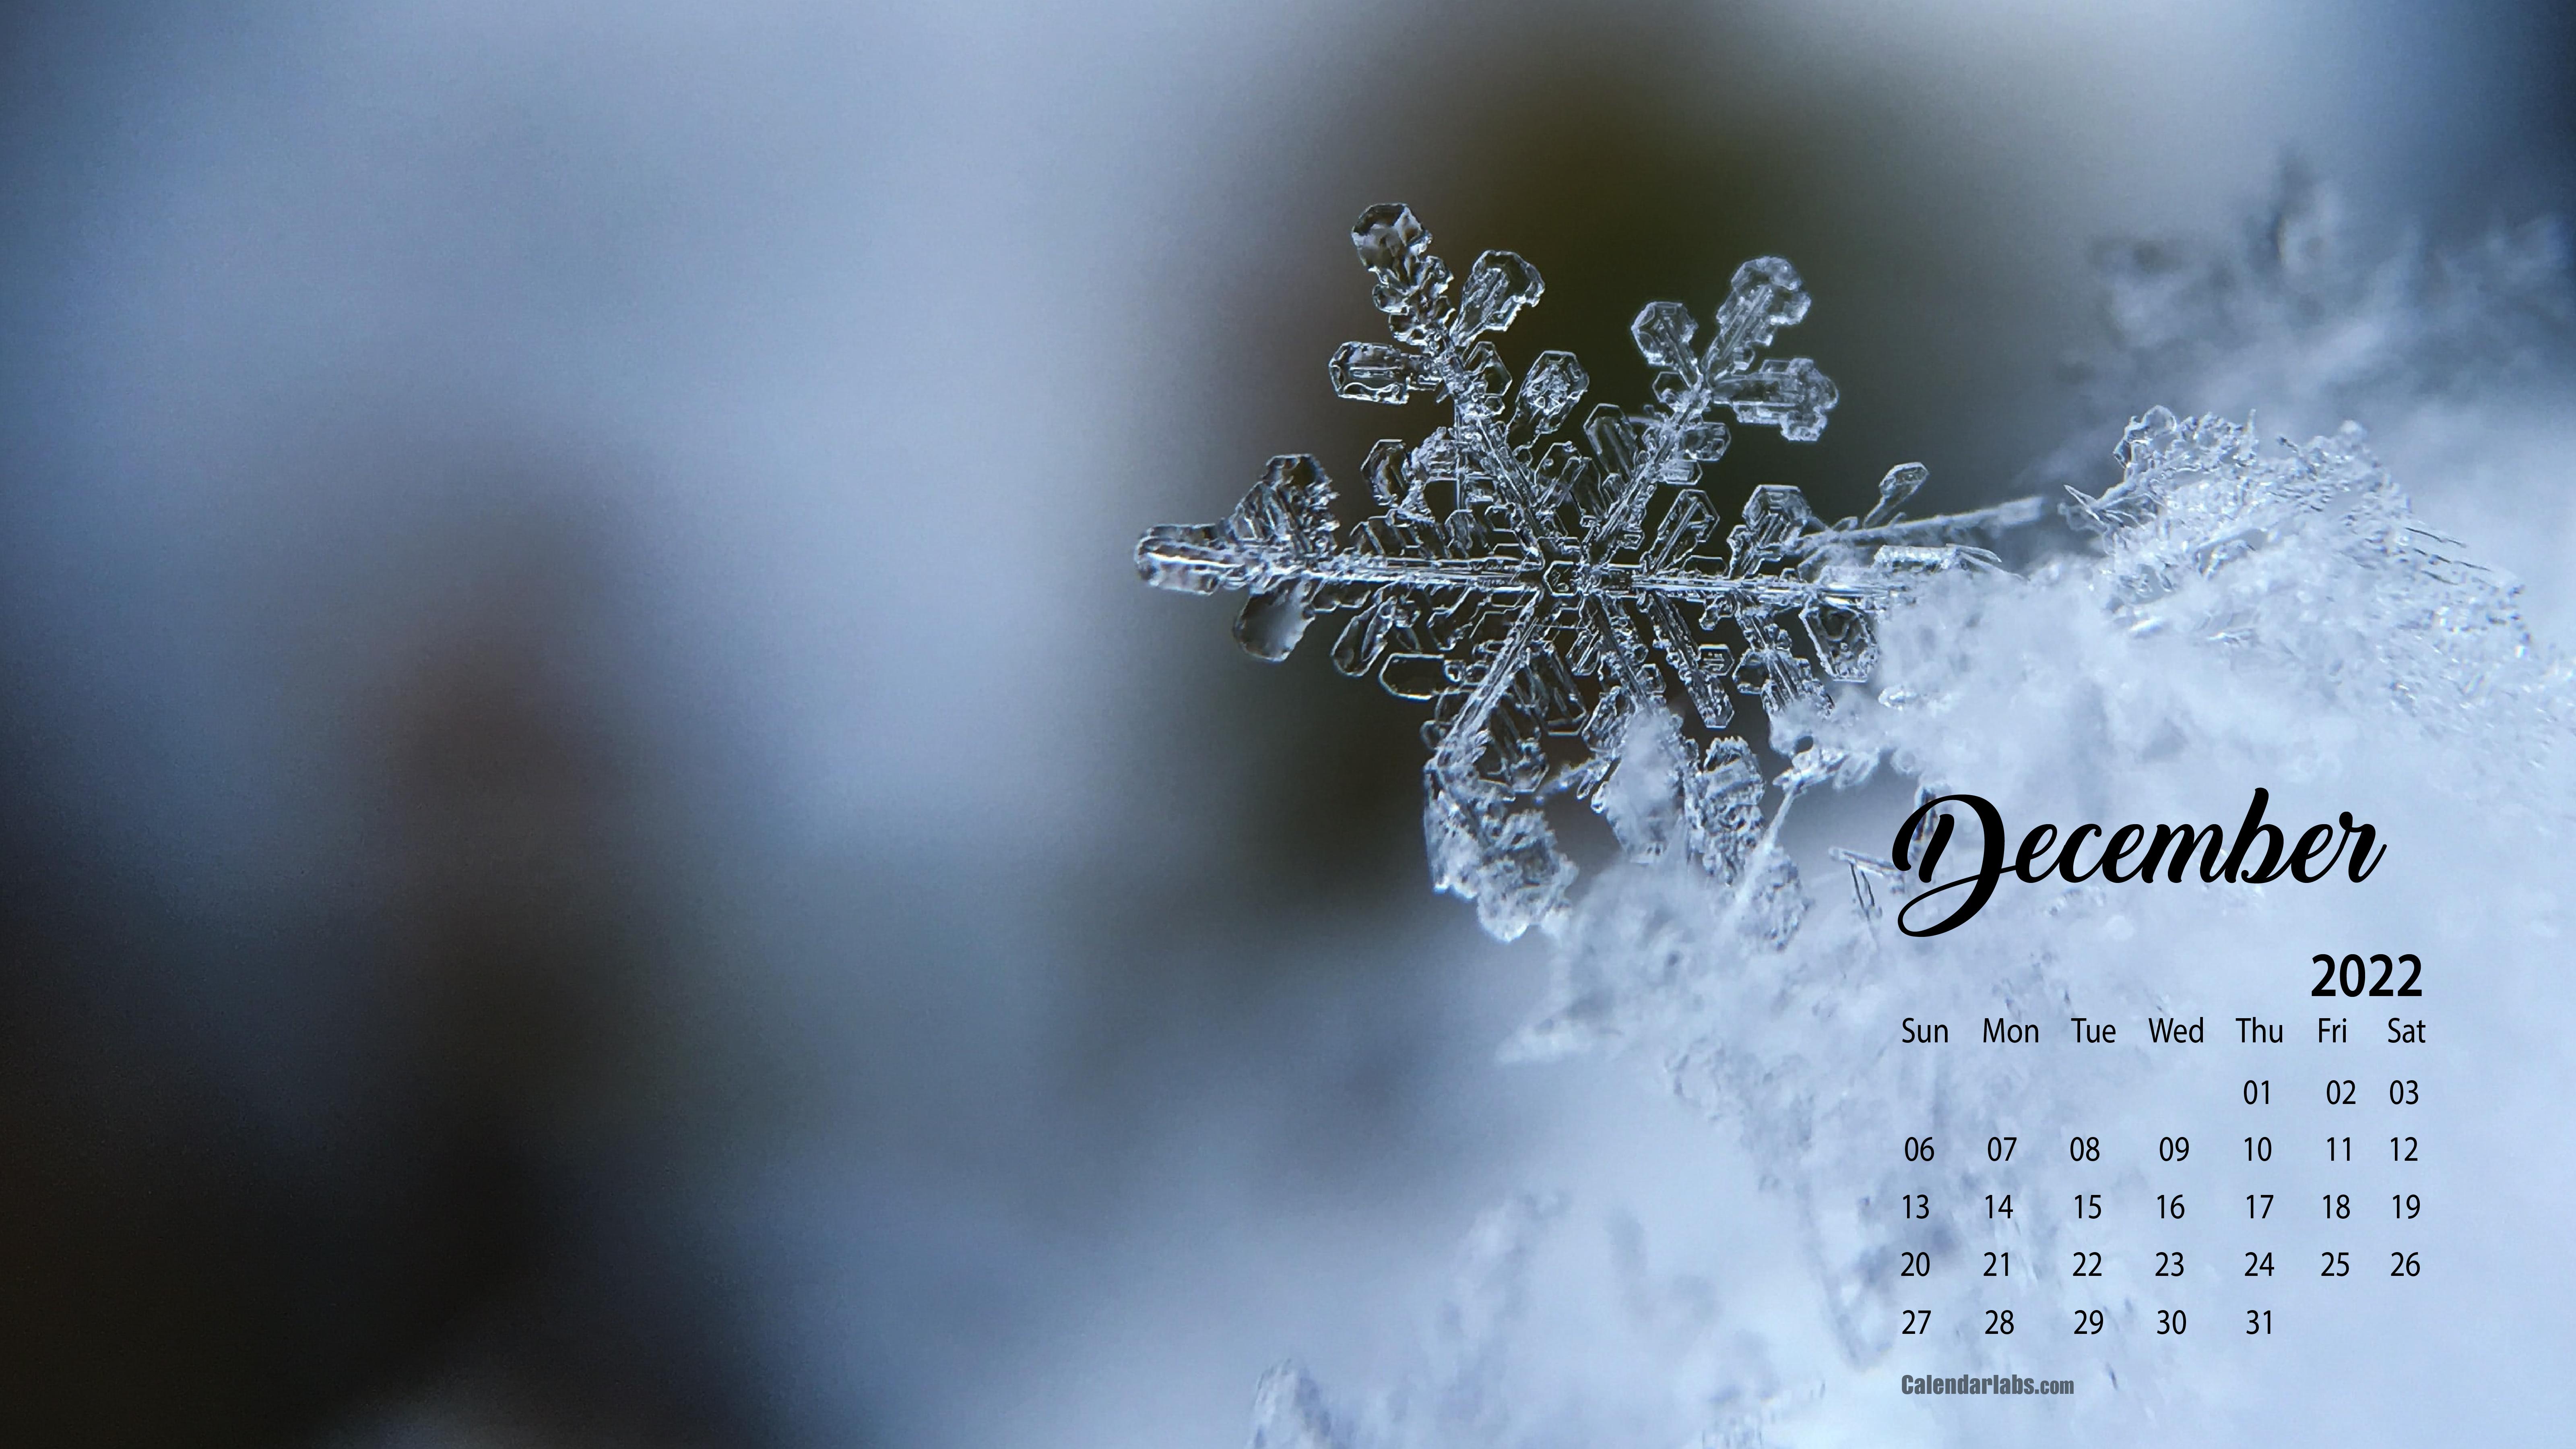 December 2022 Desktop Wallpaper Calendar   CalendarLabs